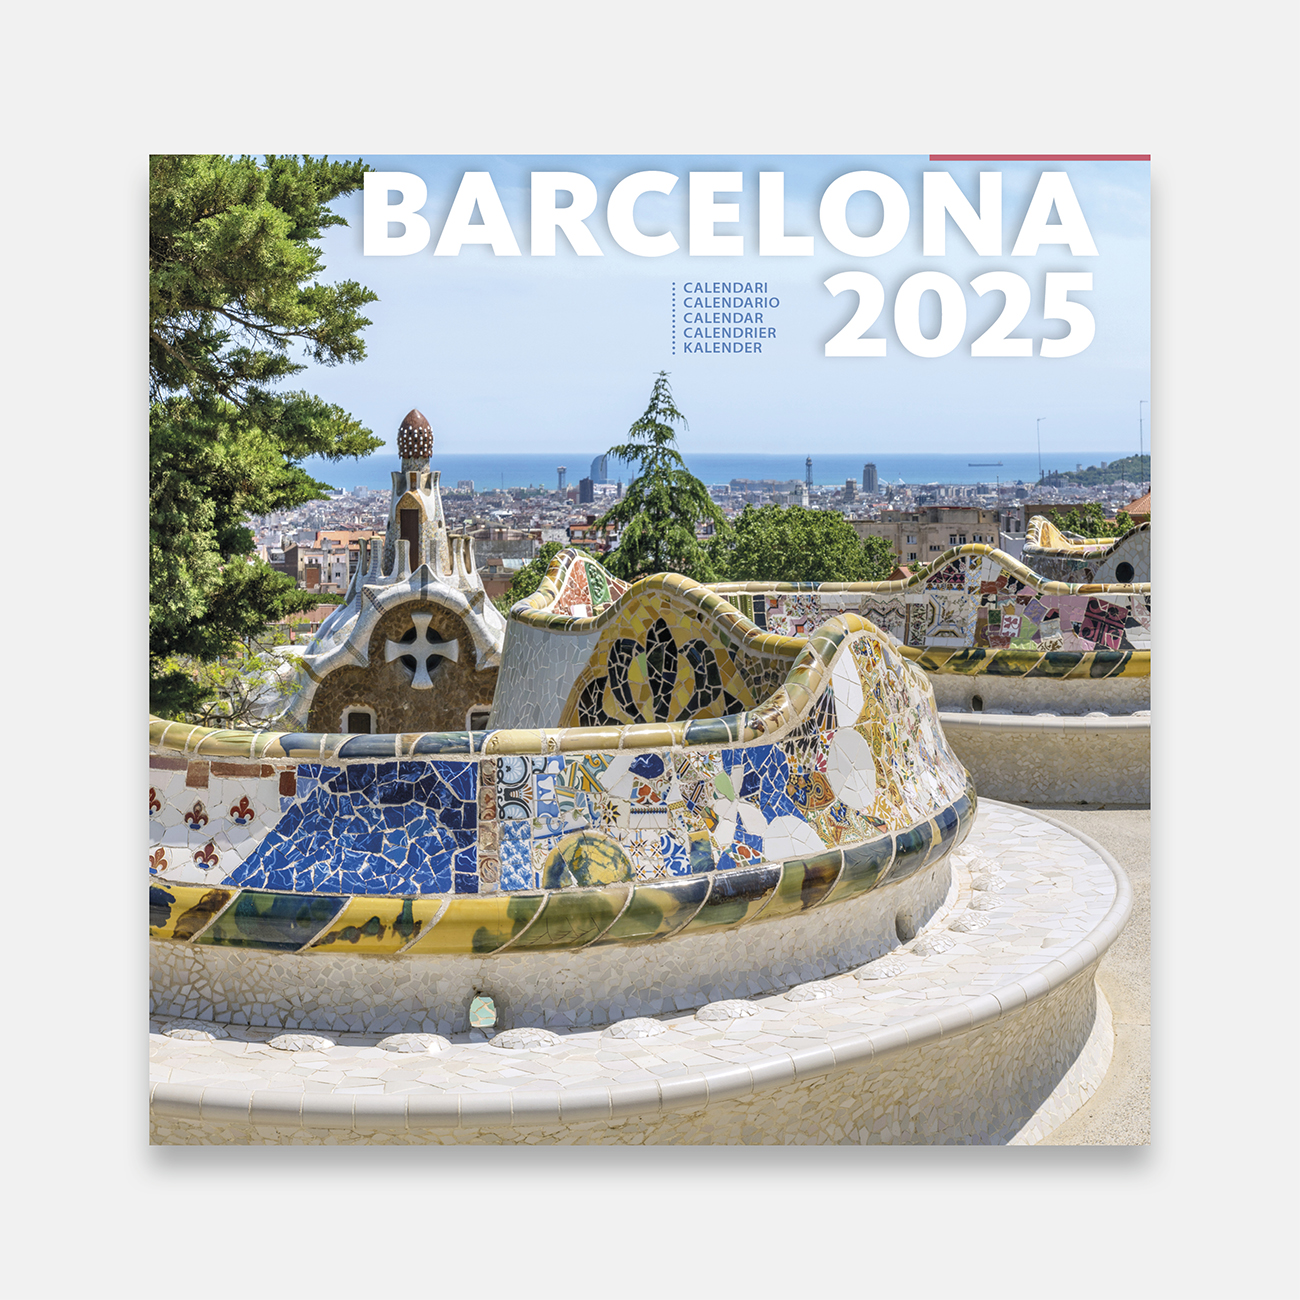 Calendari 2025 Barcelona 25b2 calendario pared 2025 barcelona